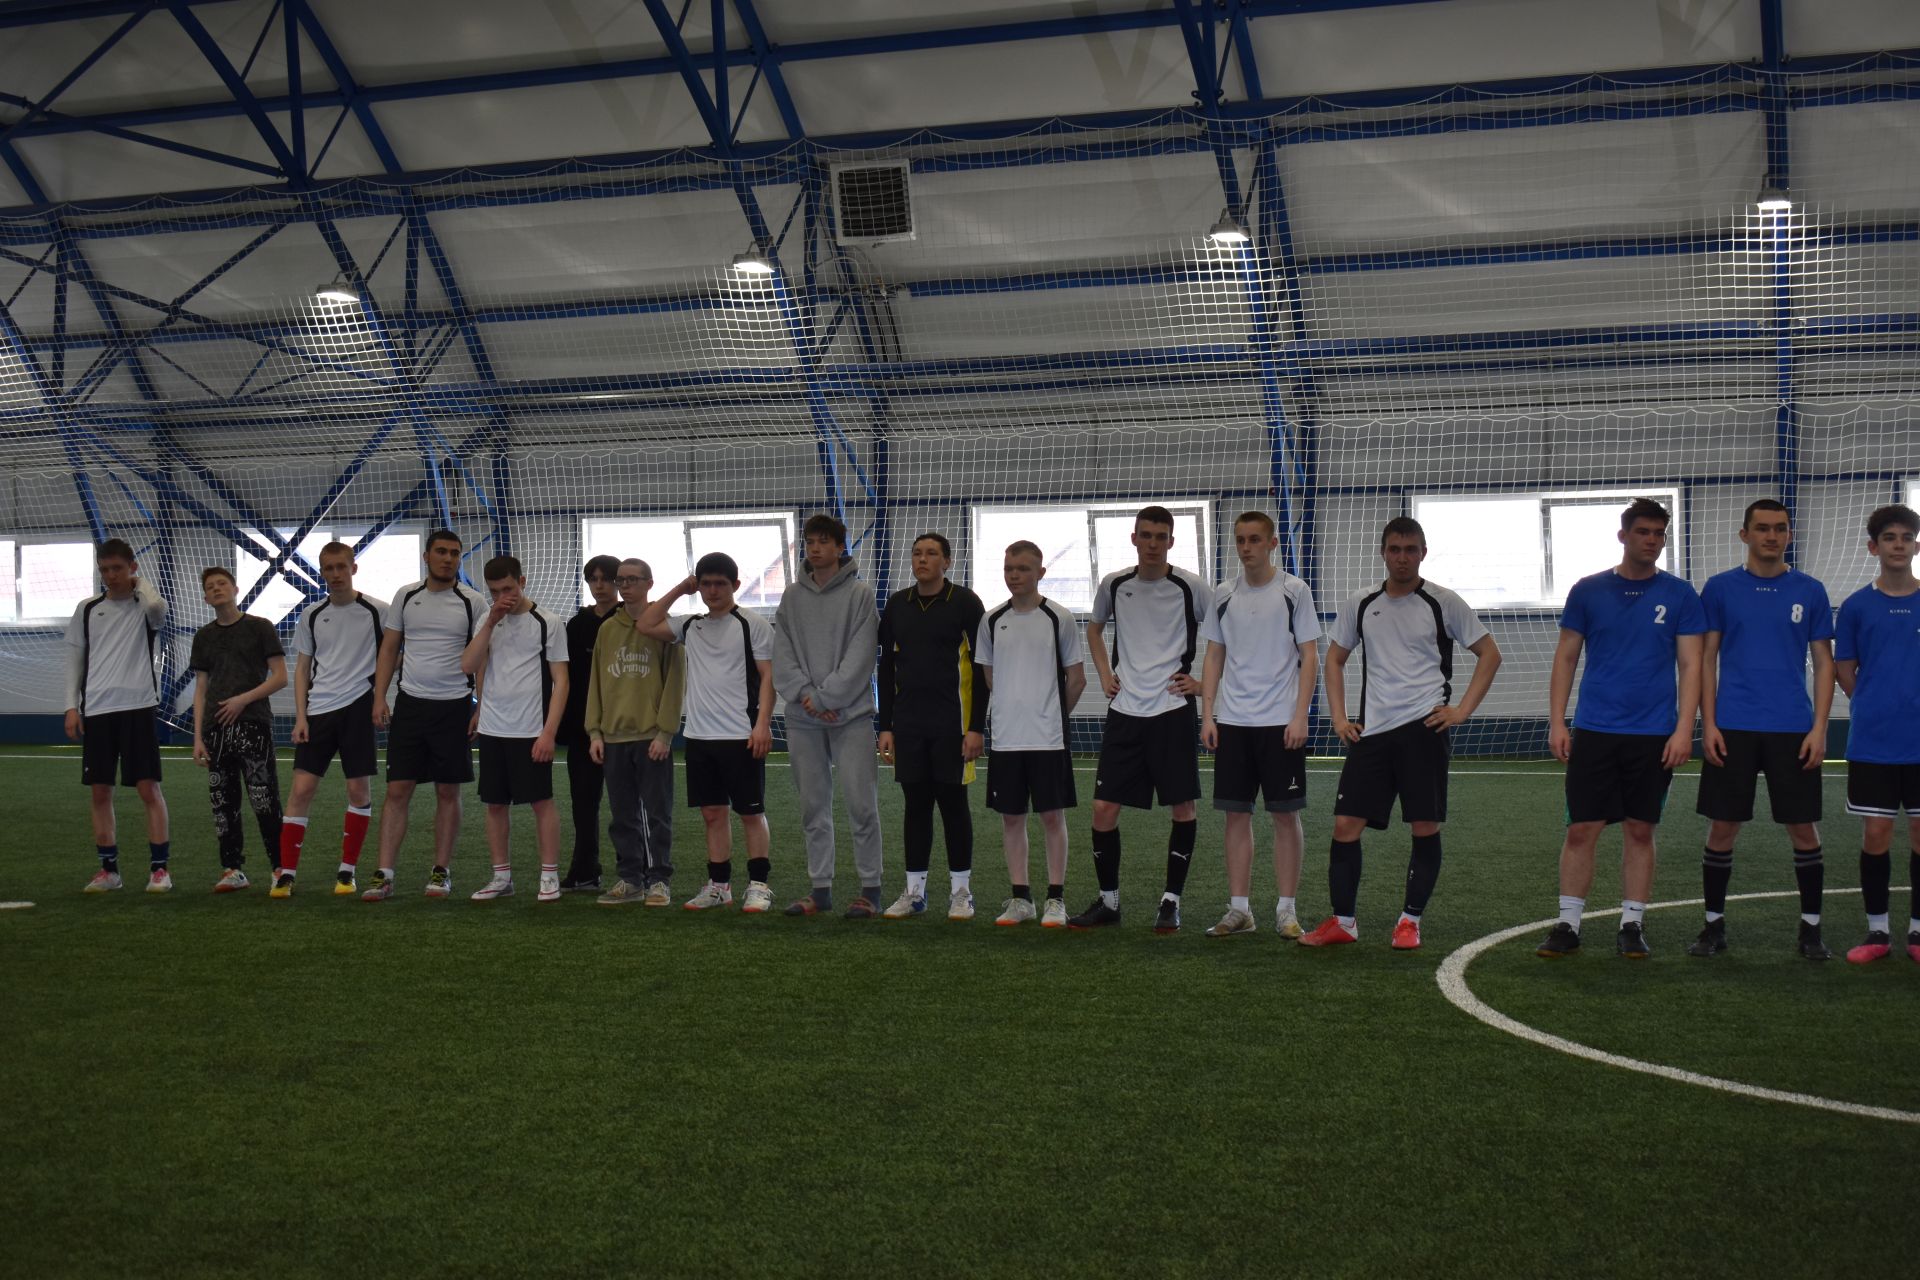 Студенты Мензелинского педагогического колледжа заняли первое место в соревновании по мини-футболу